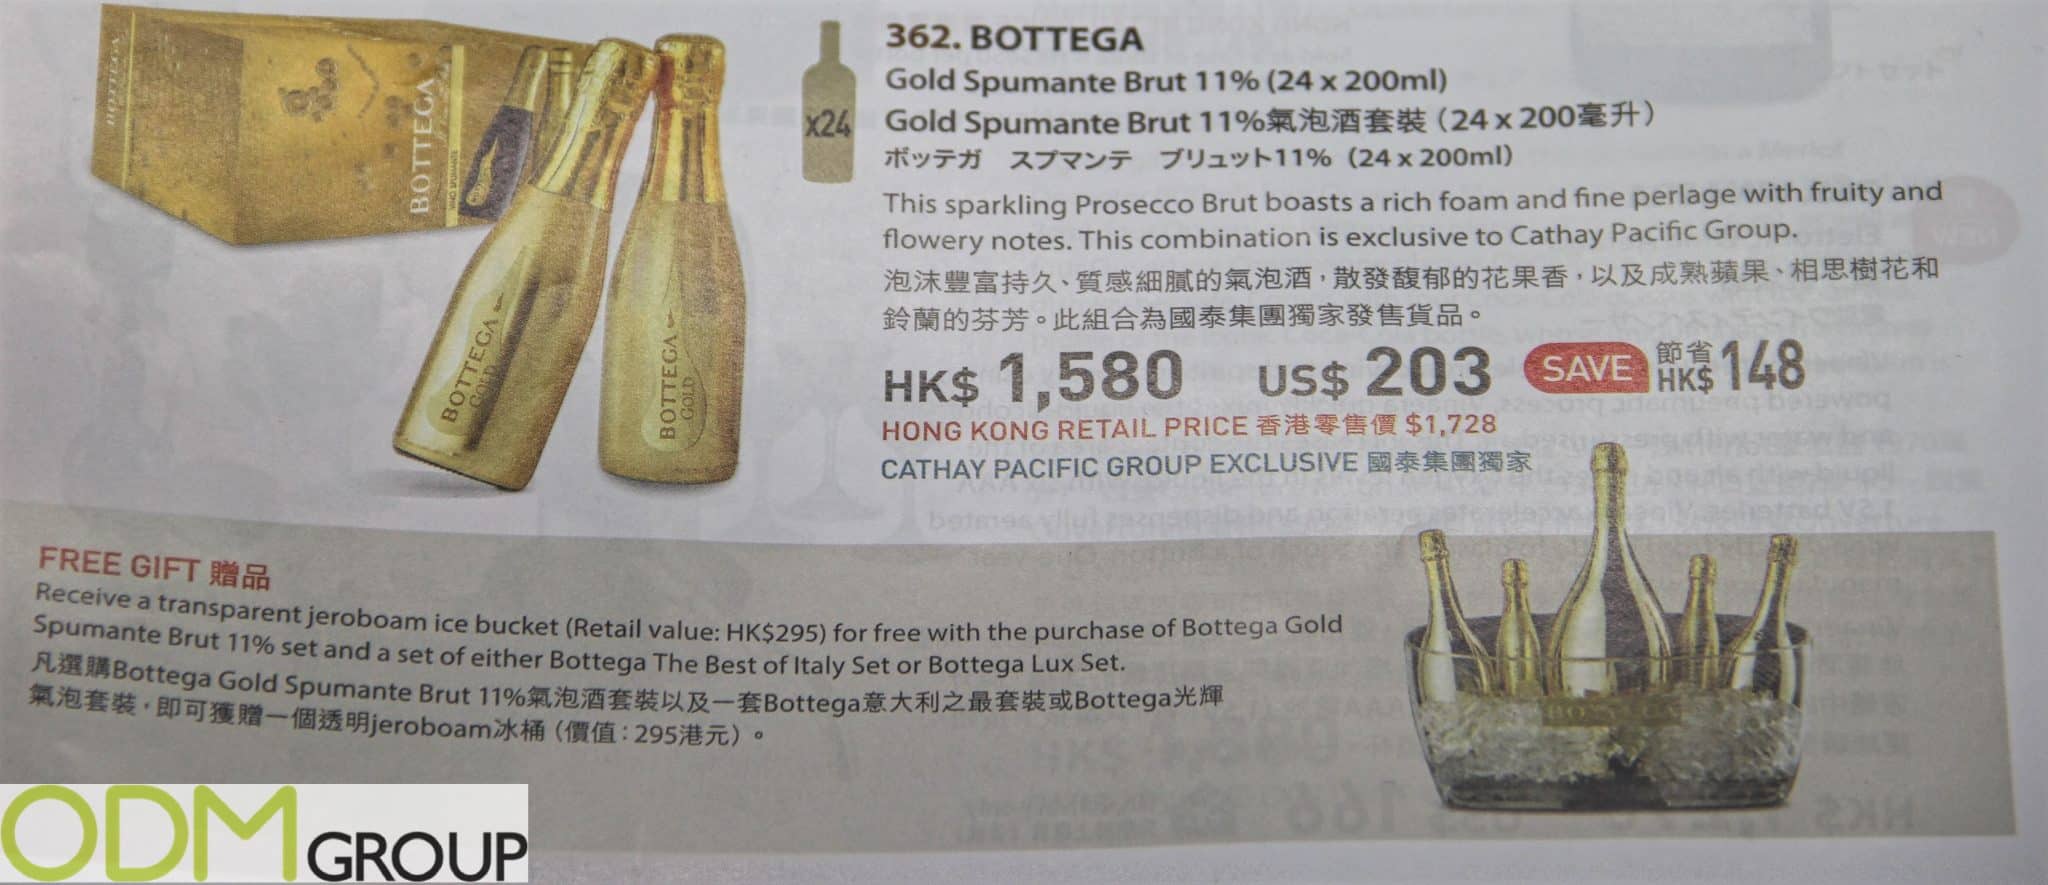 Magazine Promotion: Bottega Offers Free Ice Bucket